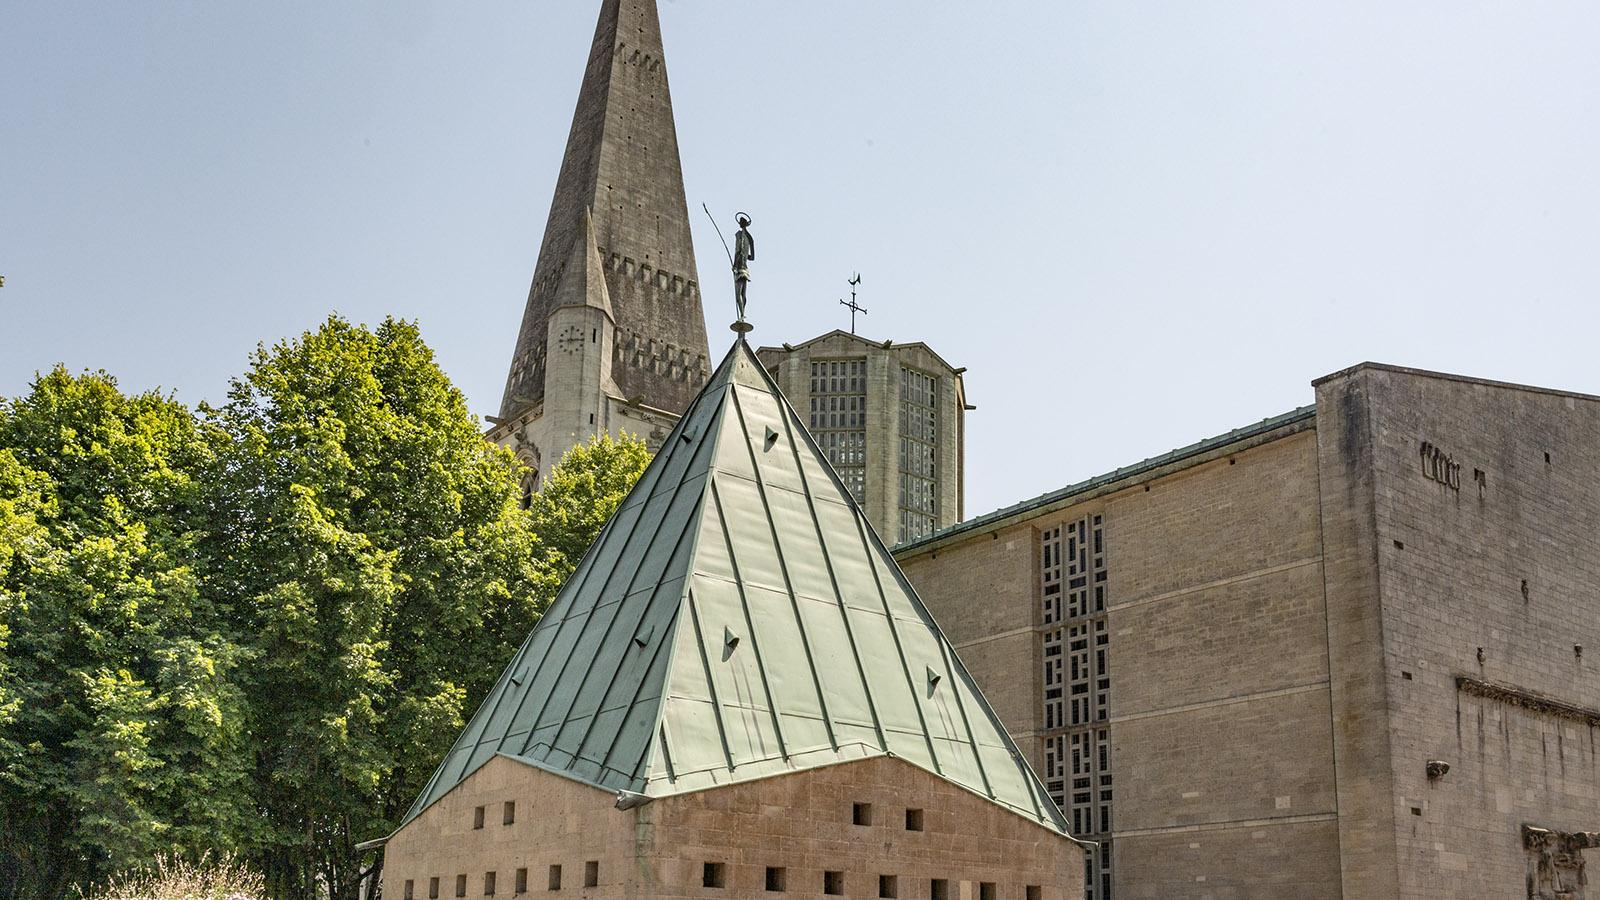 Die Stadtkirche von Valogne besitzt drei Türme - Modern eund Erbe verbinden sich im Bau auf faszinierende Art und Weise. Foto: Hilke Maunder